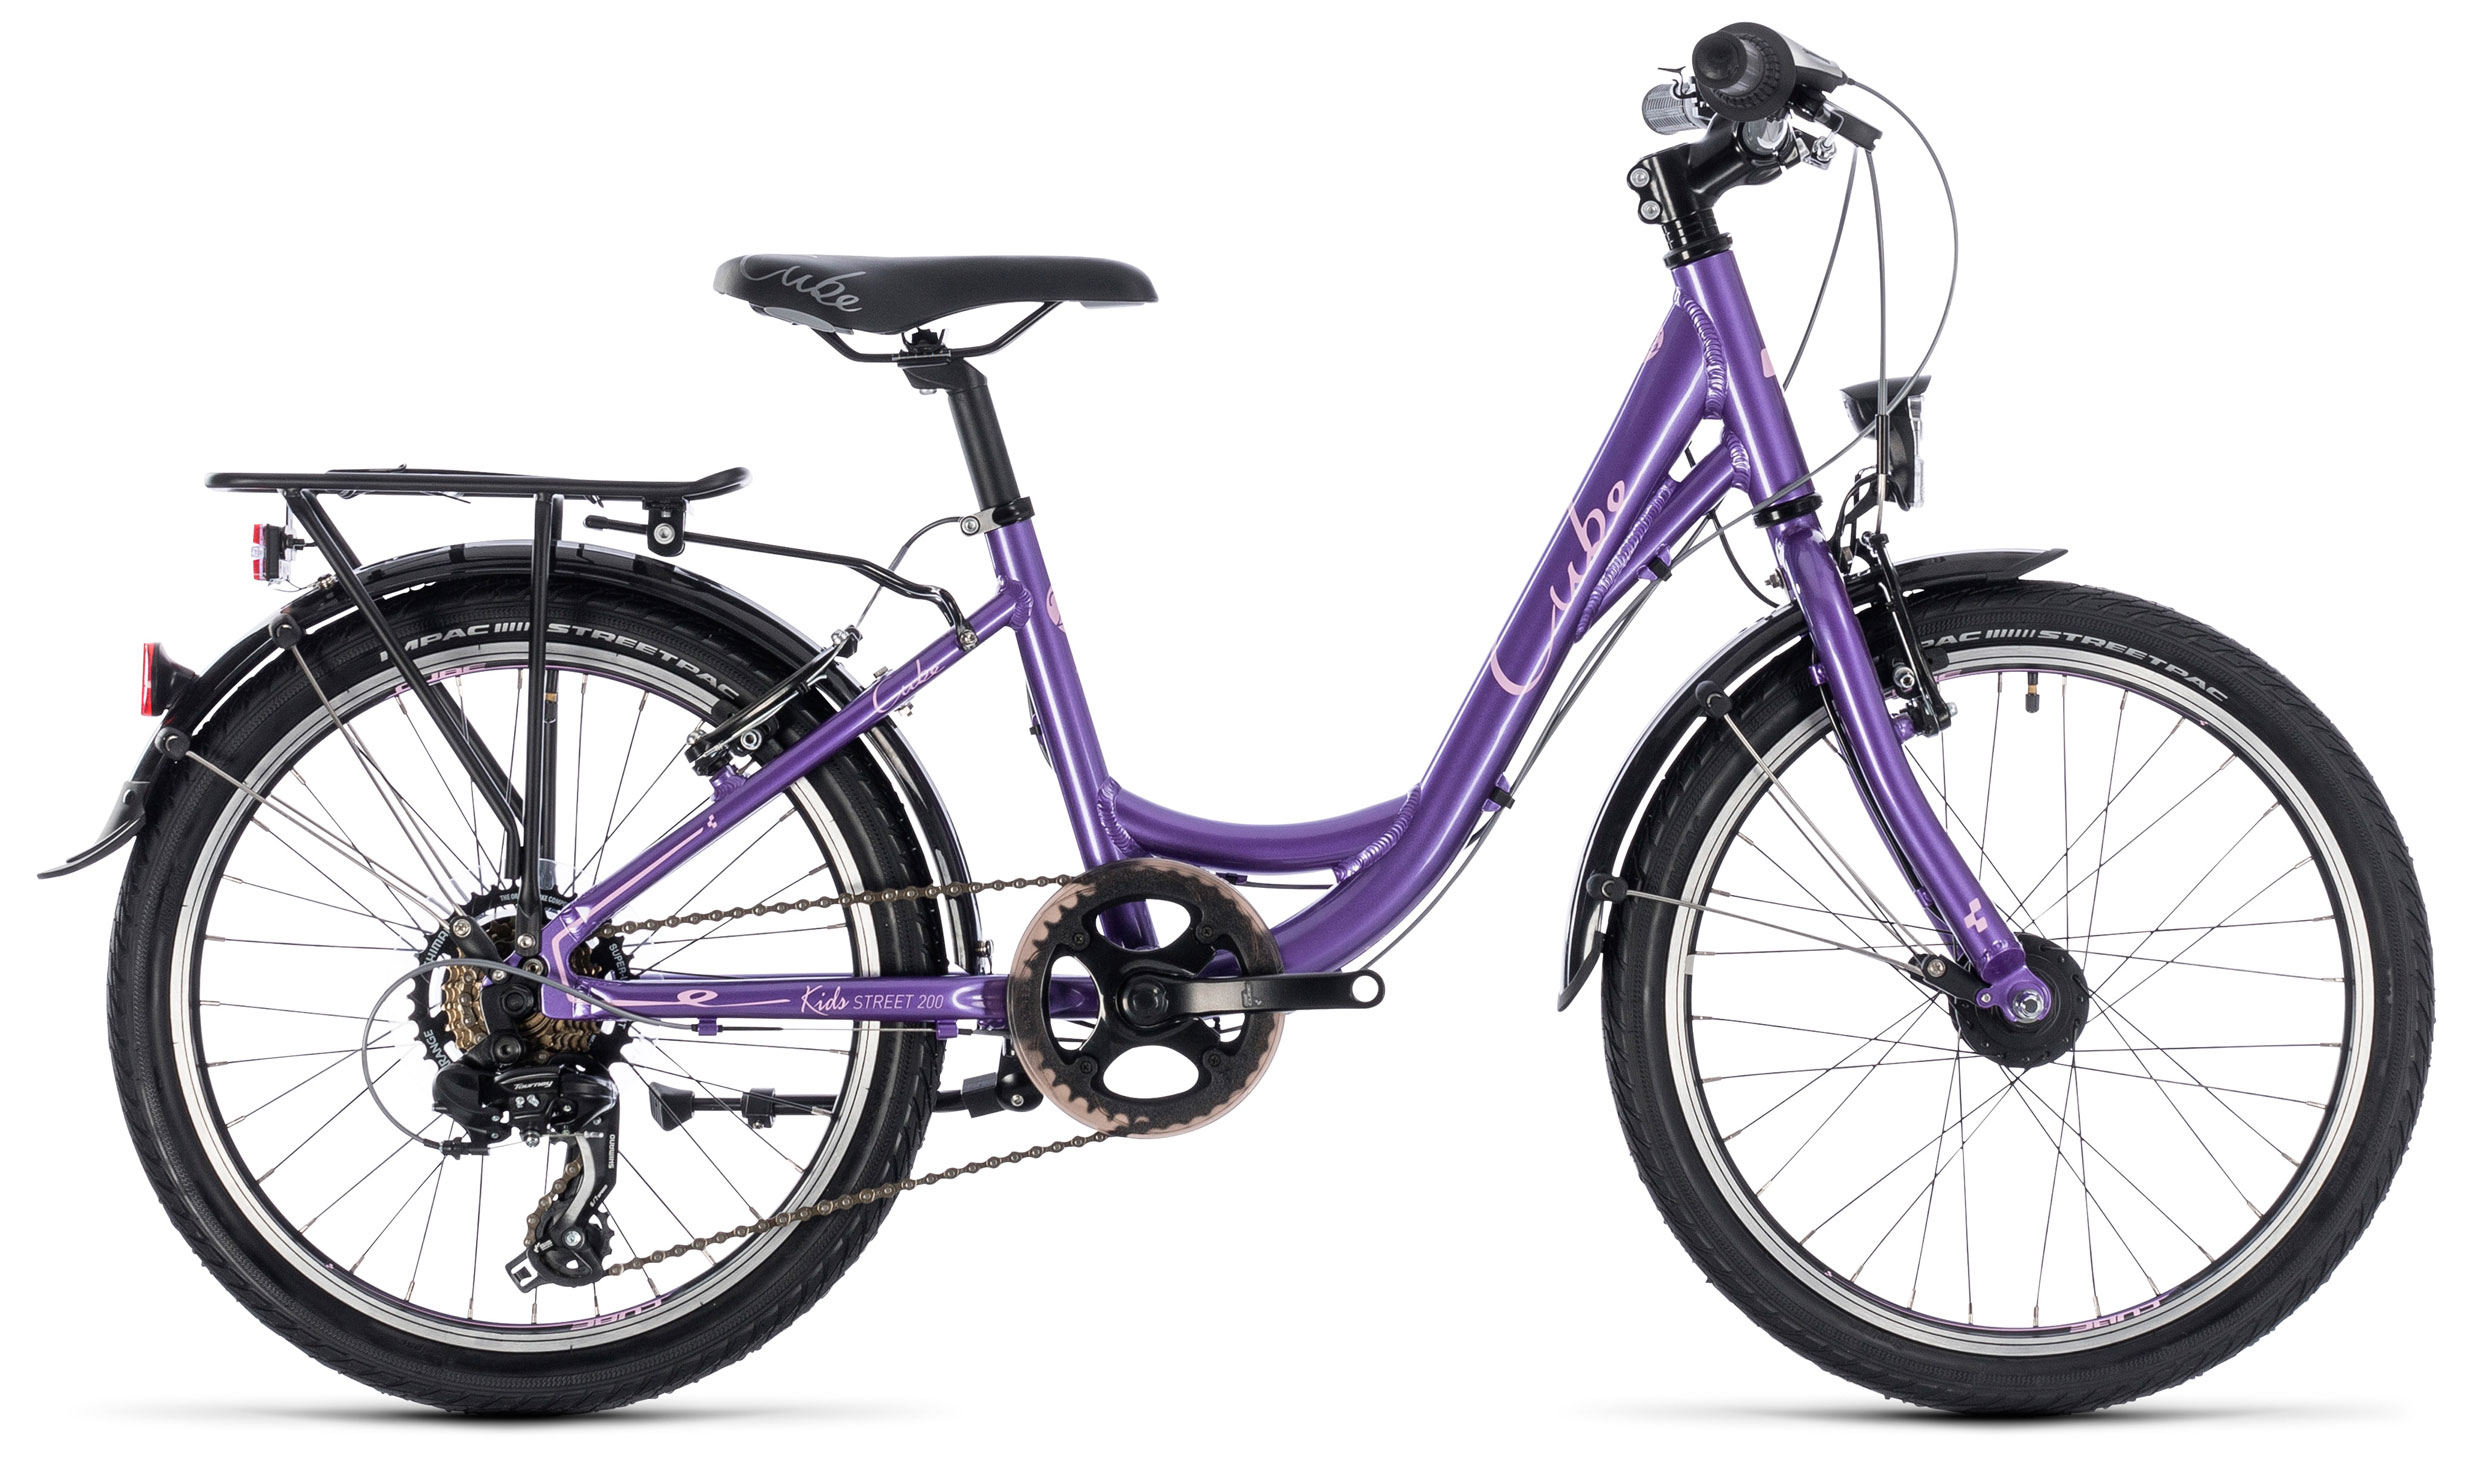  Отзывы о Детском велосипеде Cube Ella 200 2019